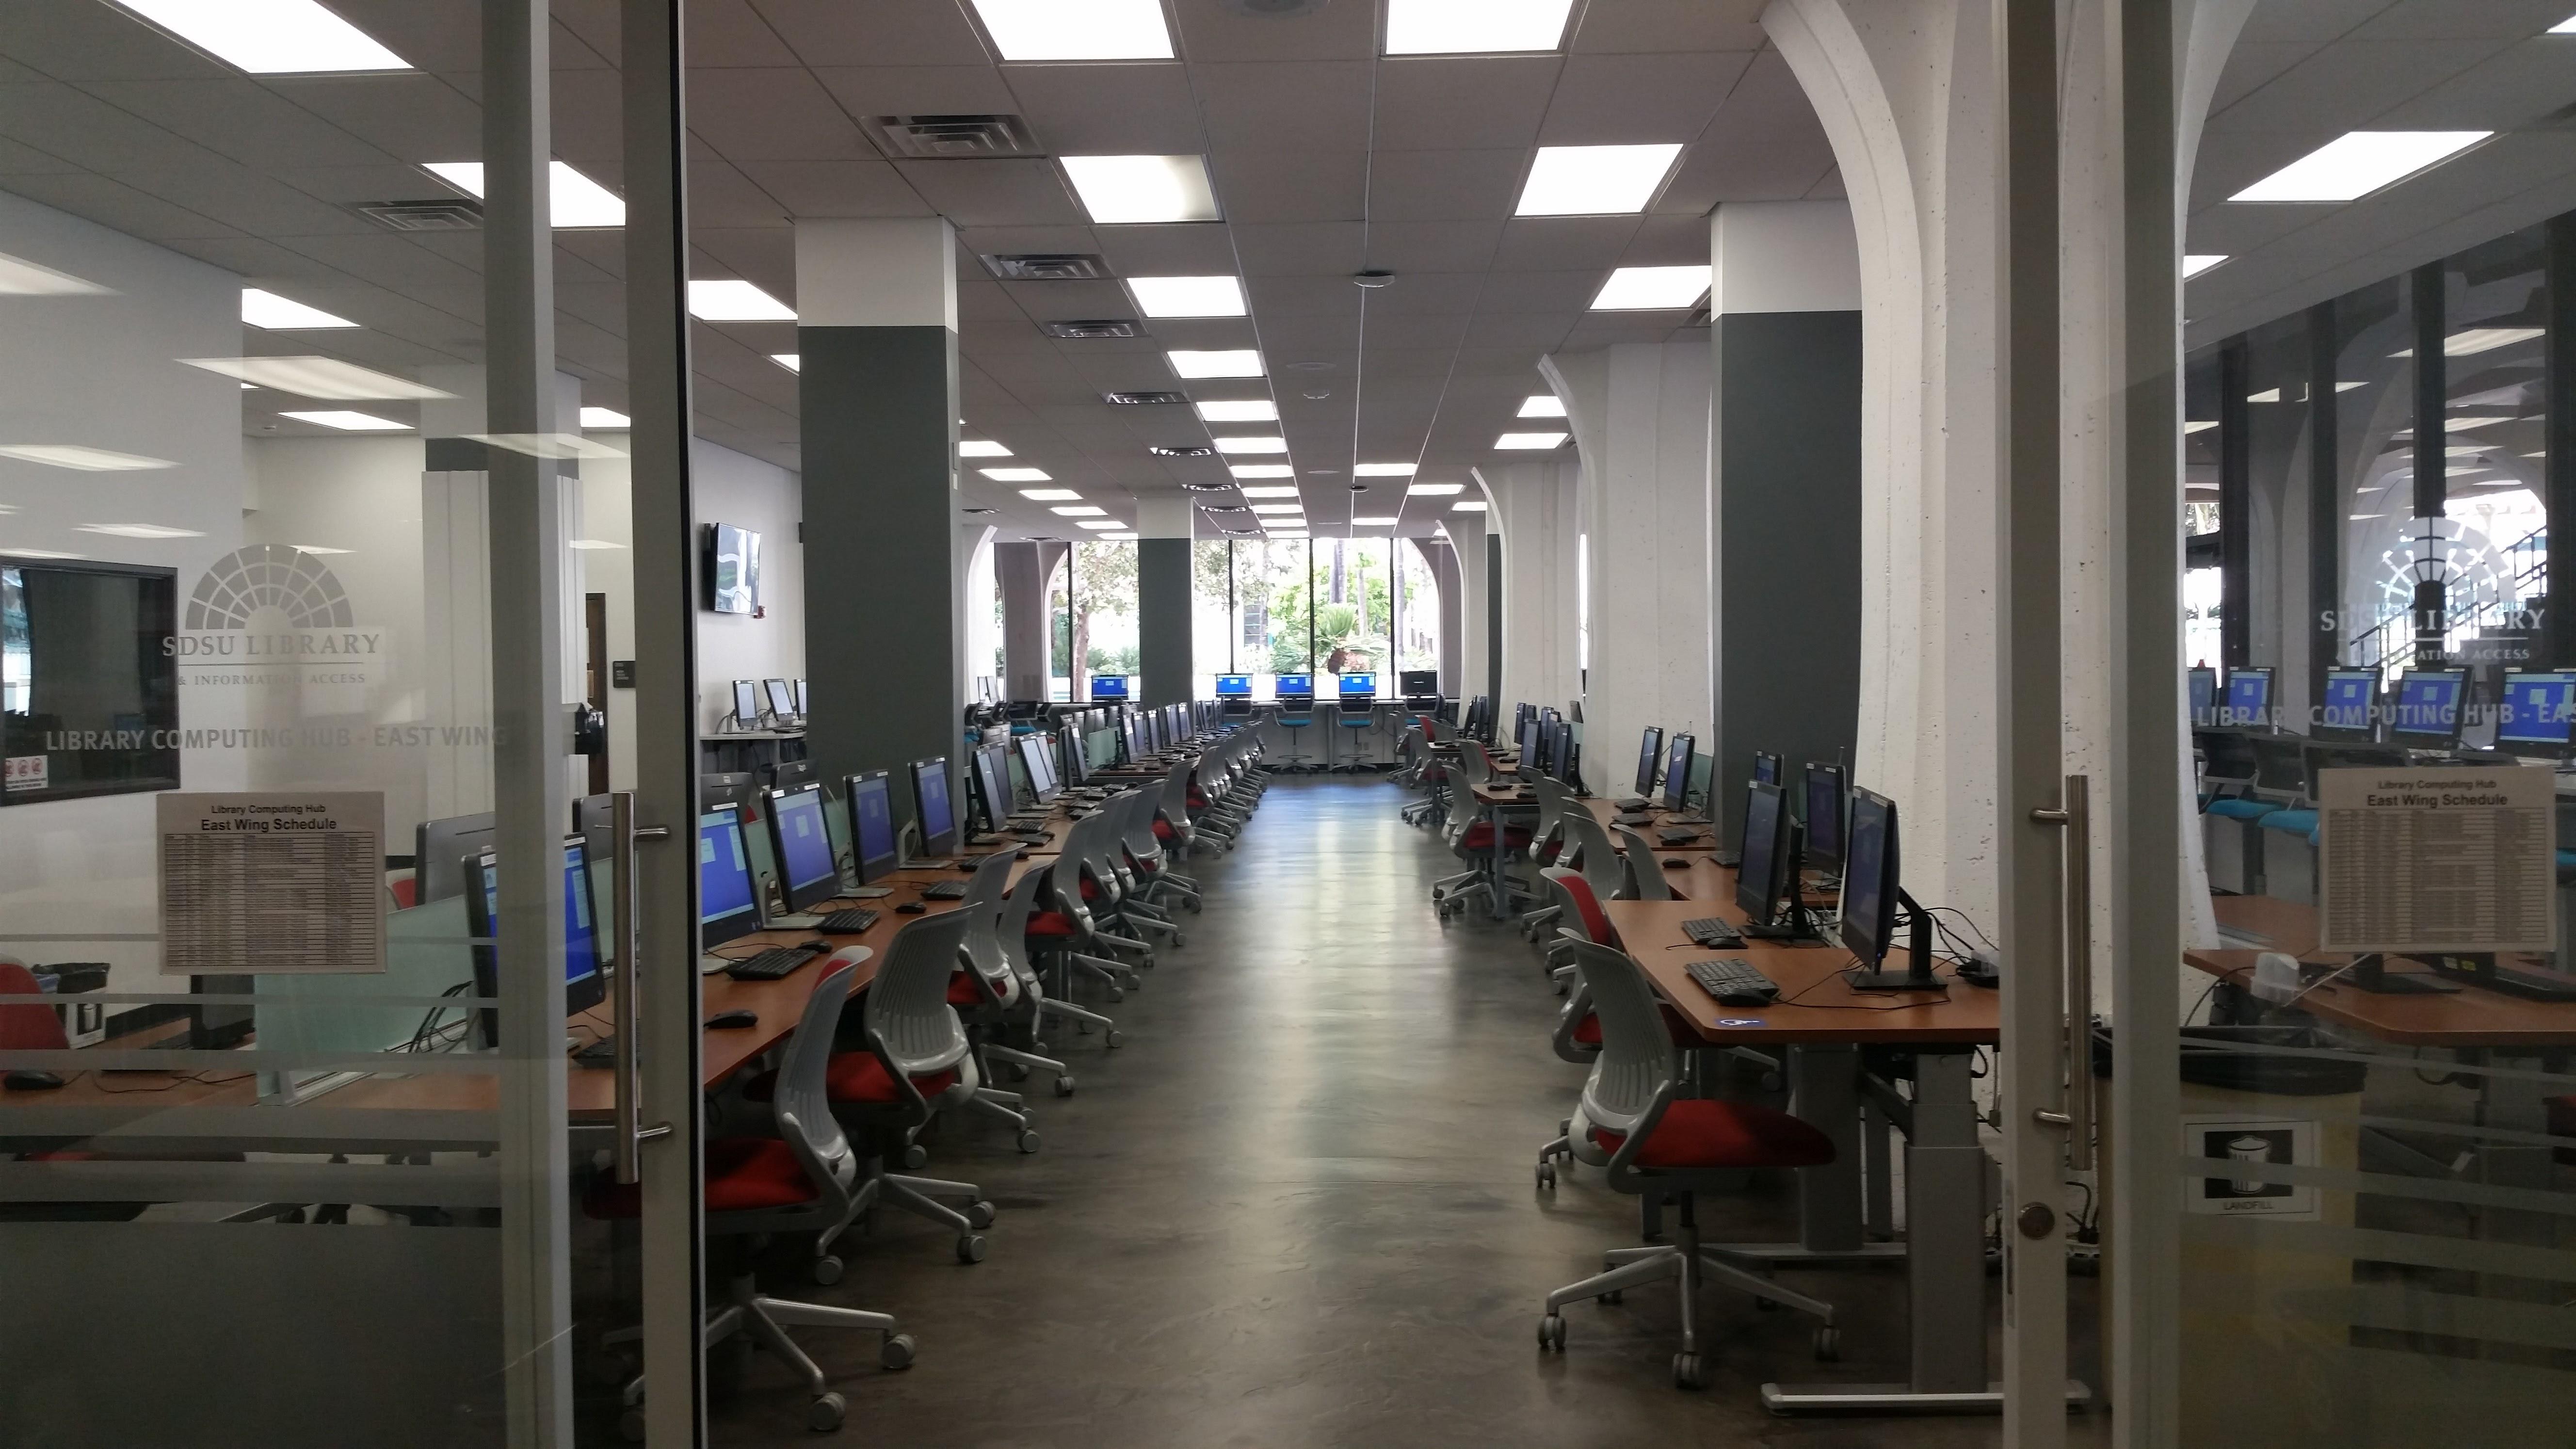 Library computer lab at SDSU